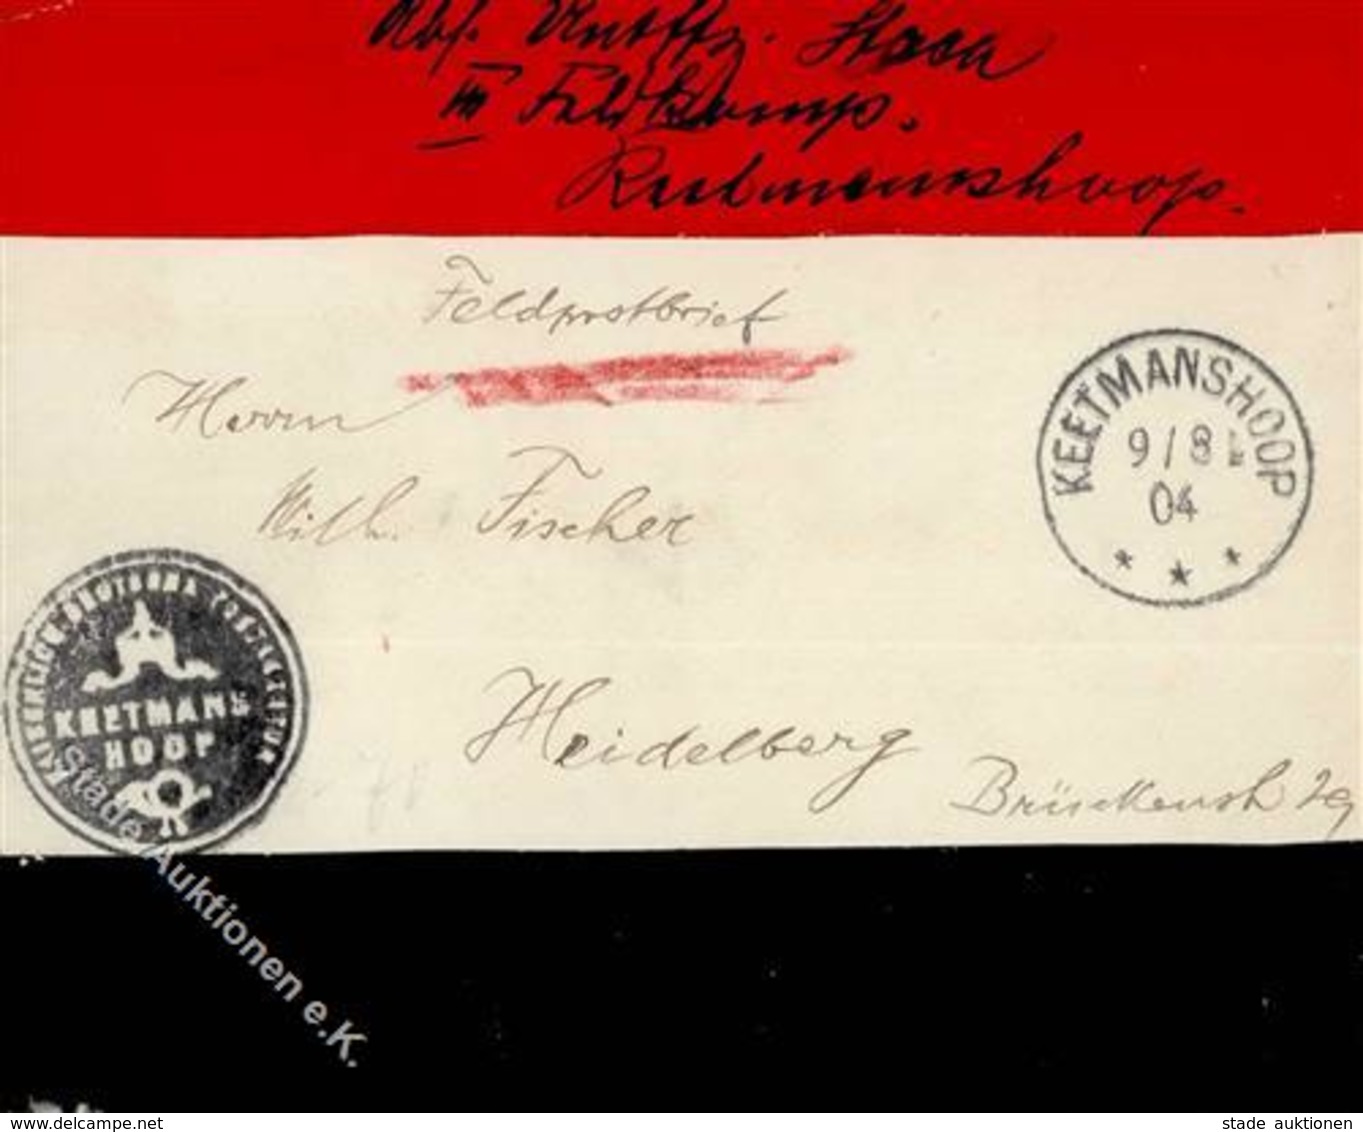 Kolonien Deutsch-Südwestafrika Feldpost-Brief, K1 KEETMANSHOOP 9/8 04", Brief Mit Rotem Und Schwarzem Streifen, Sowie Fe - History